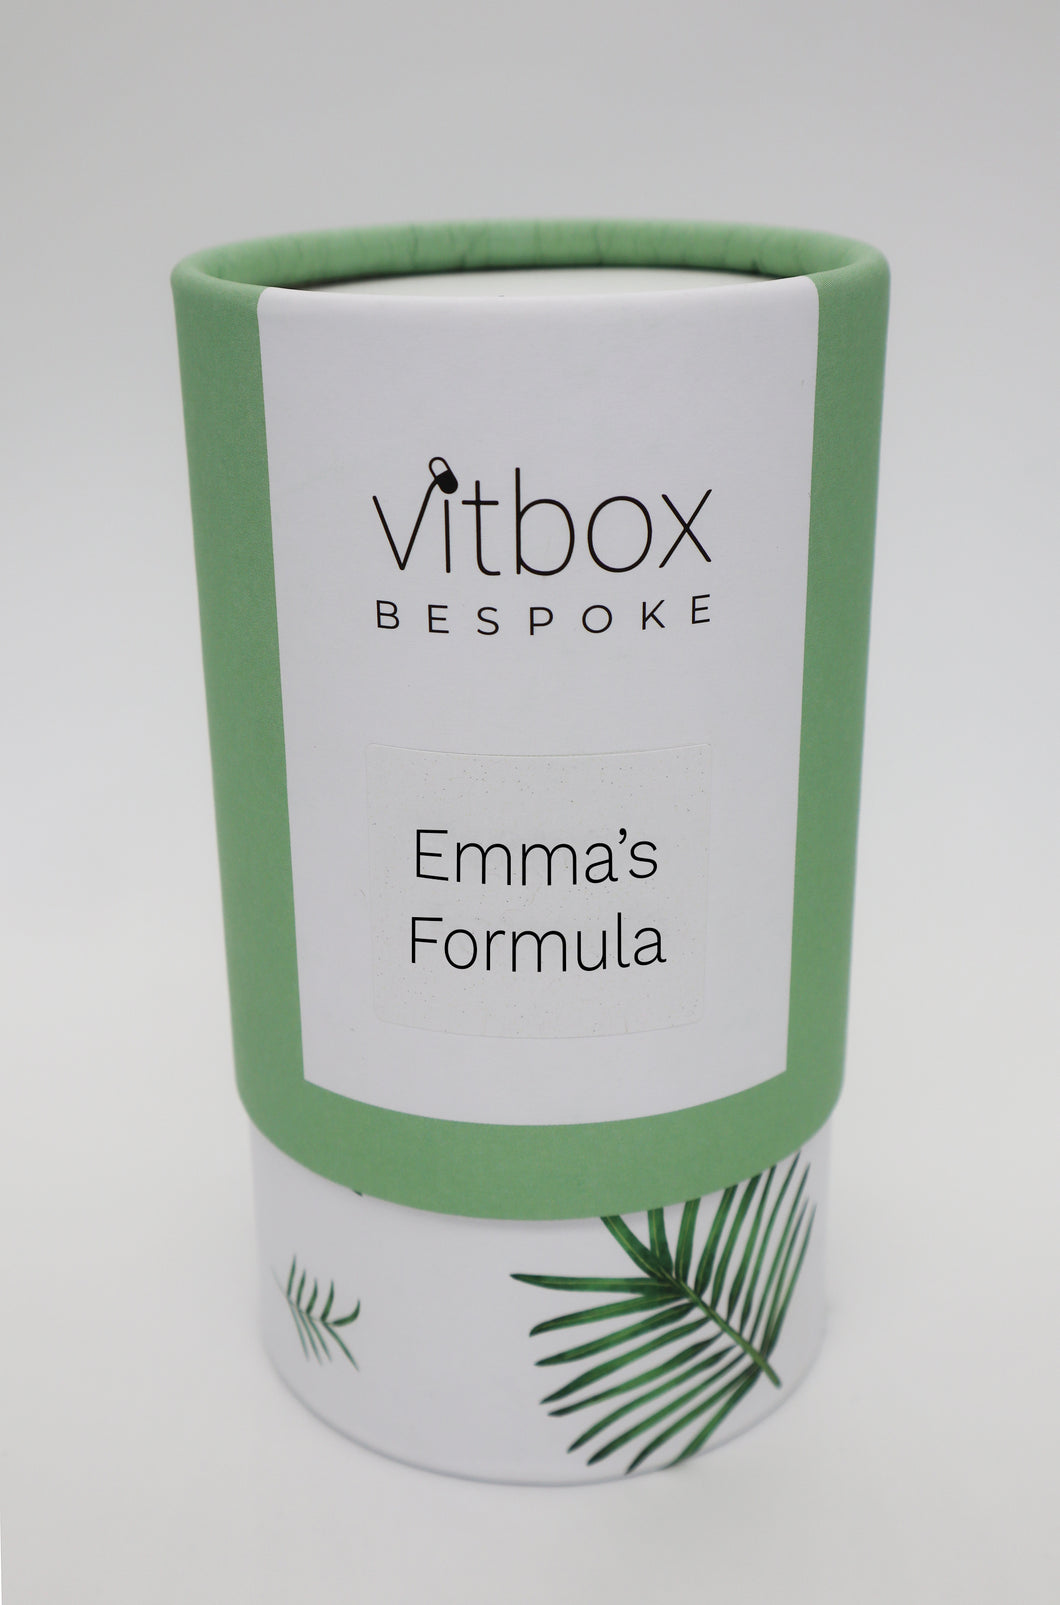 Emma's Vitbox Bespoke